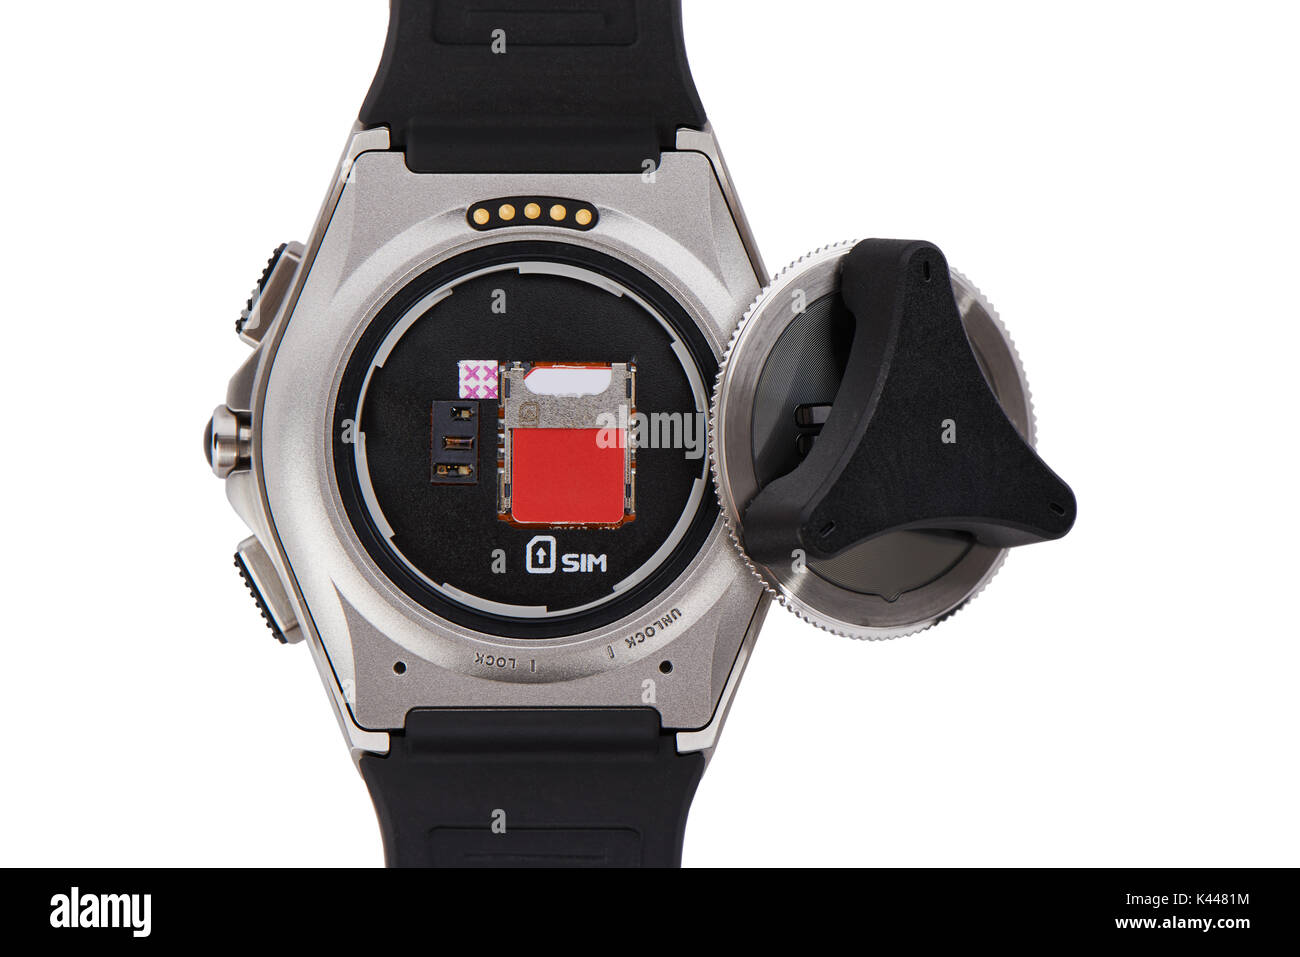 USIM Steckplatz in einem Smart Watch und geöffneten Deckel mit Flaschenöffner, isoliert auf Weiss. Smart Watch ist eine Armbanduhr, die die Funktion der Smart Phone hat. Stockfoto